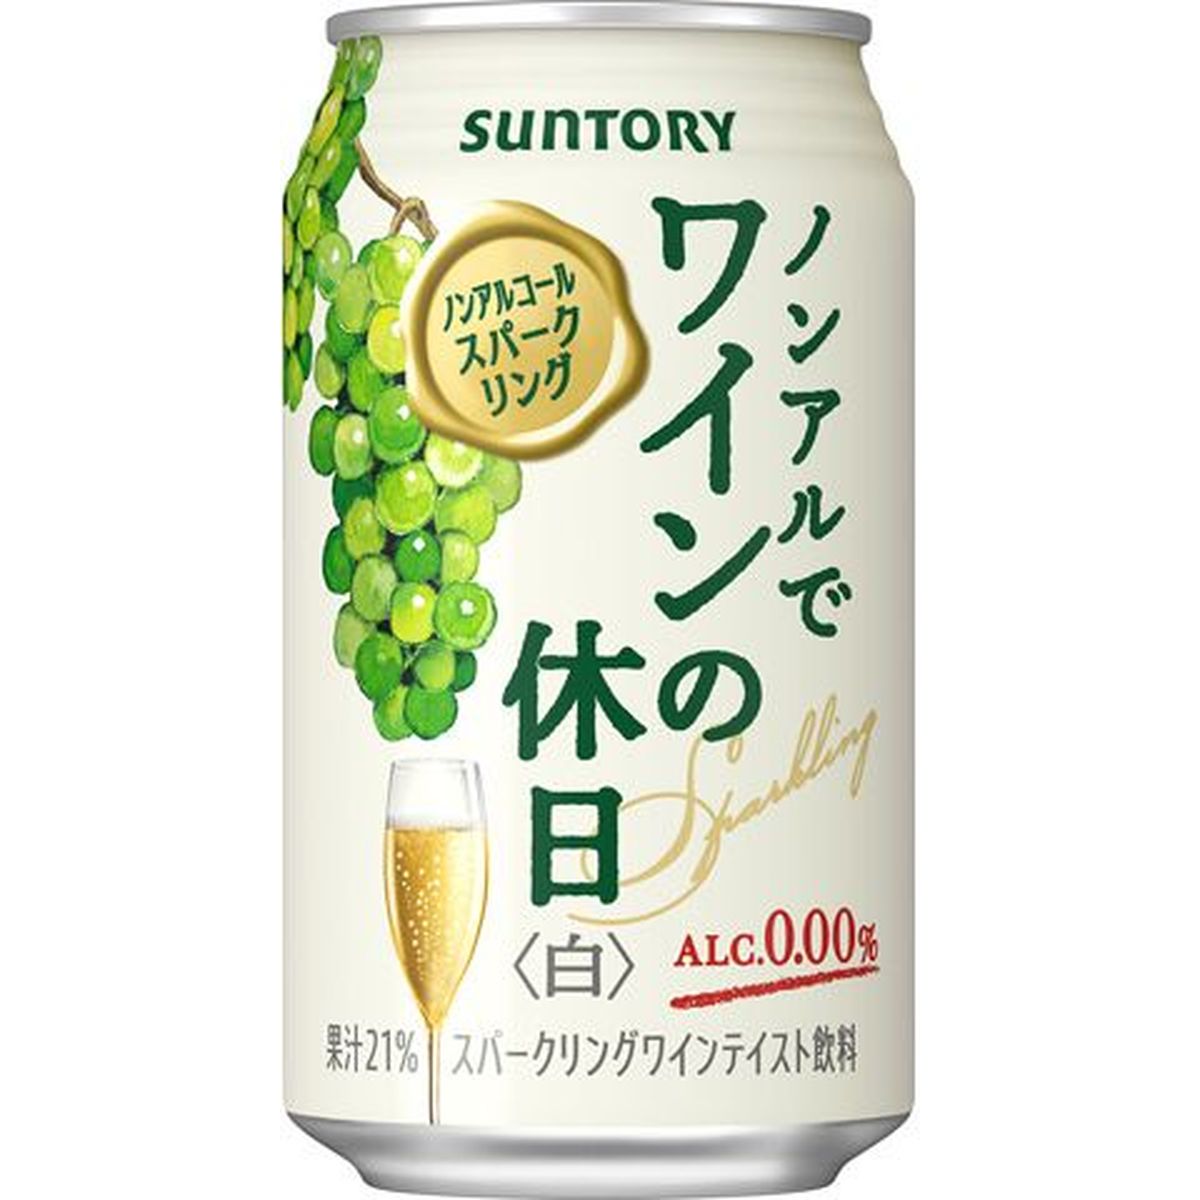 【24個入リ】サントリー ノンアルデワインノ休日 白缶 350ml